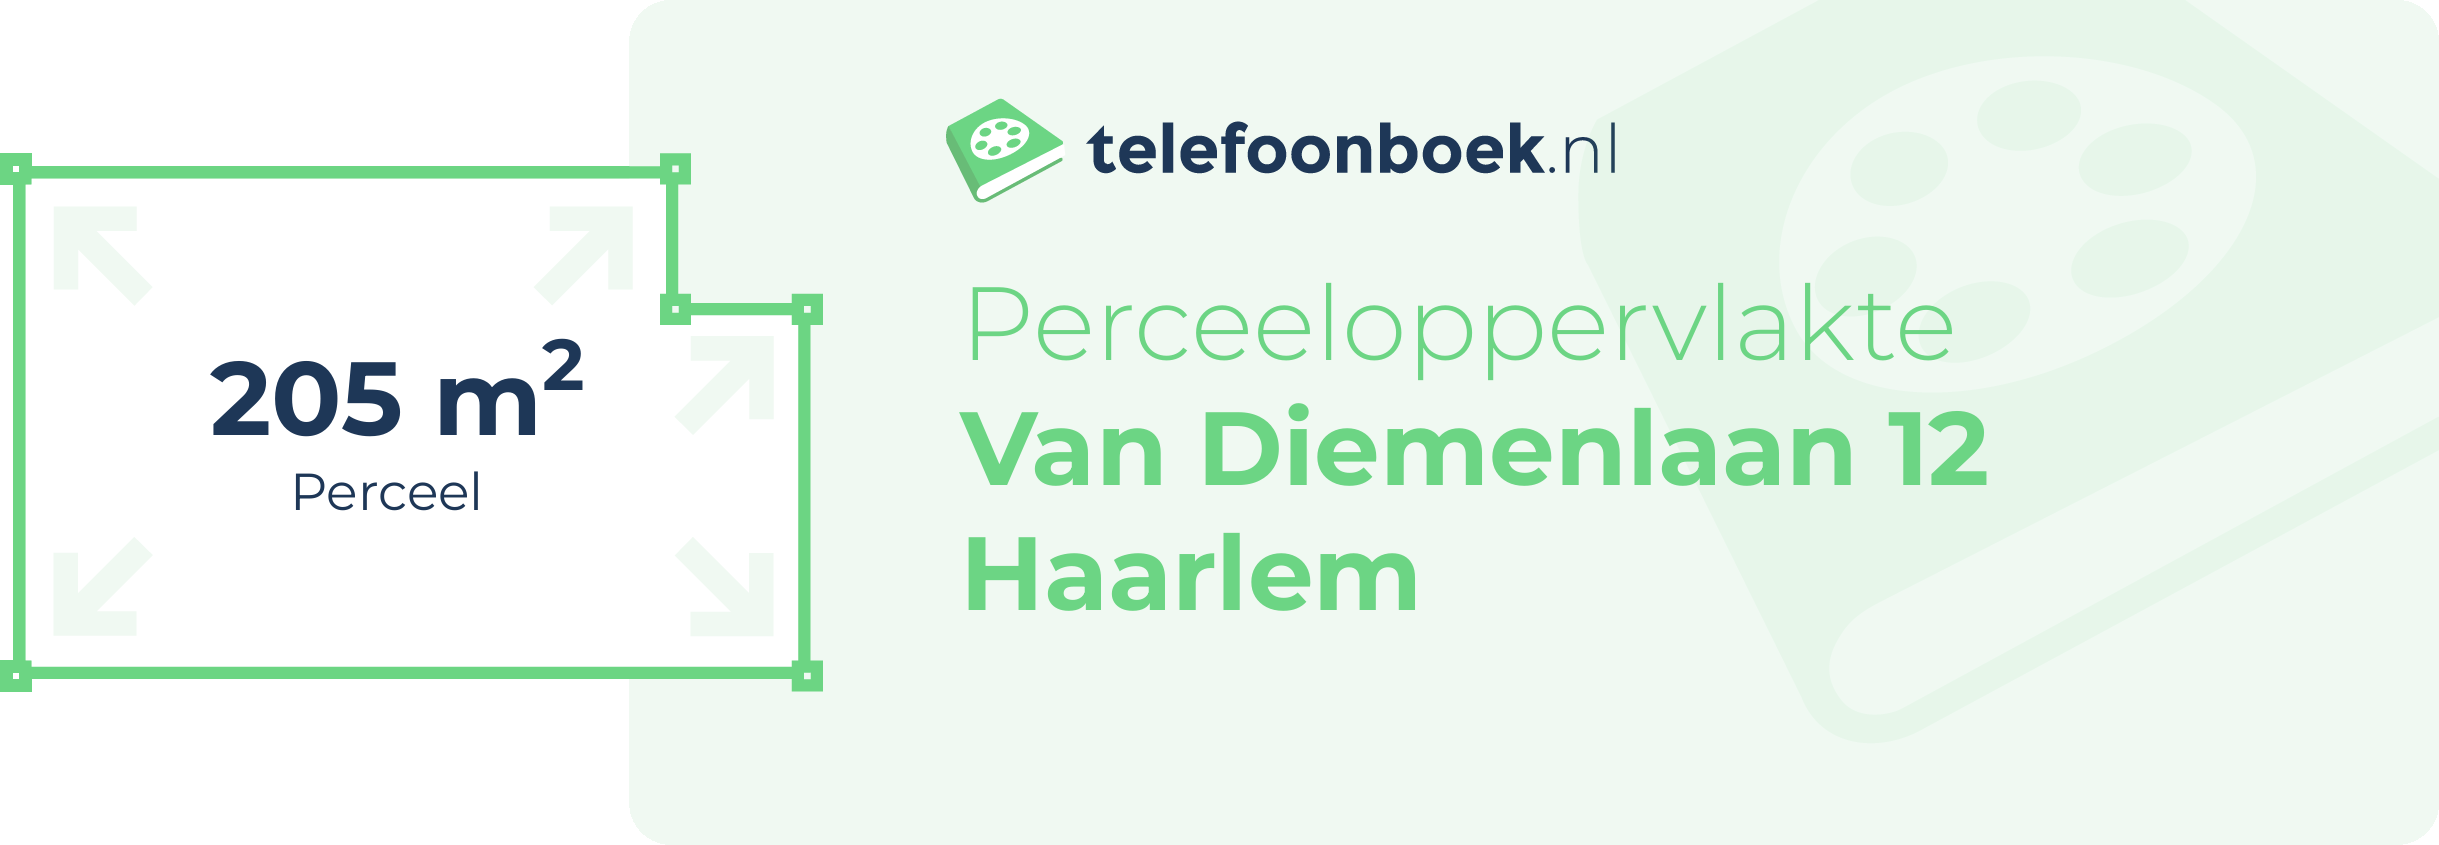 Perceeloppervlakte Van Diemenlaan 12 Haarlem